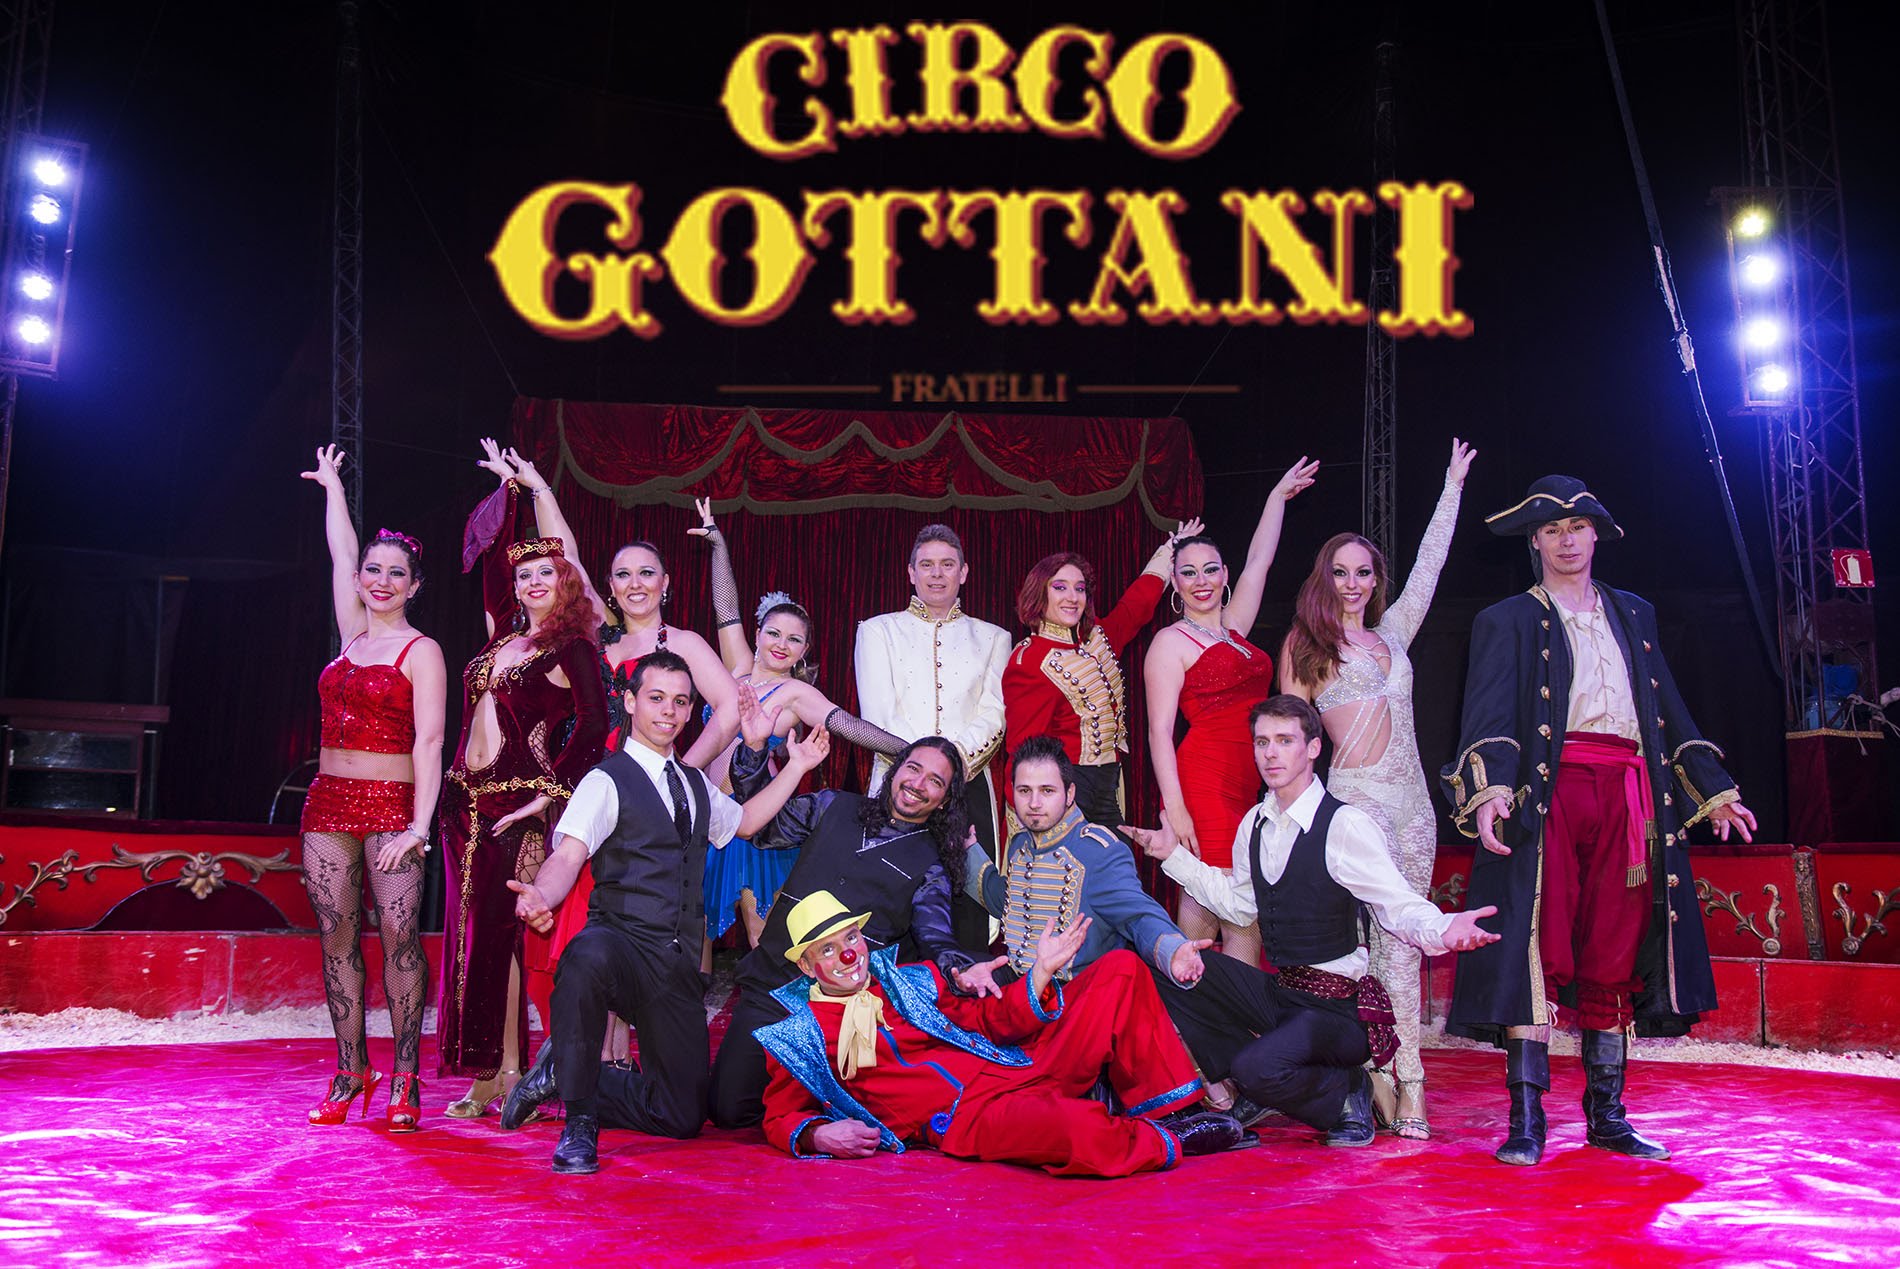 El Circo Gottani llega a Cintruénigo con un espectáculo tradicionalmente ecuestre. ¡No te lo pierdas!